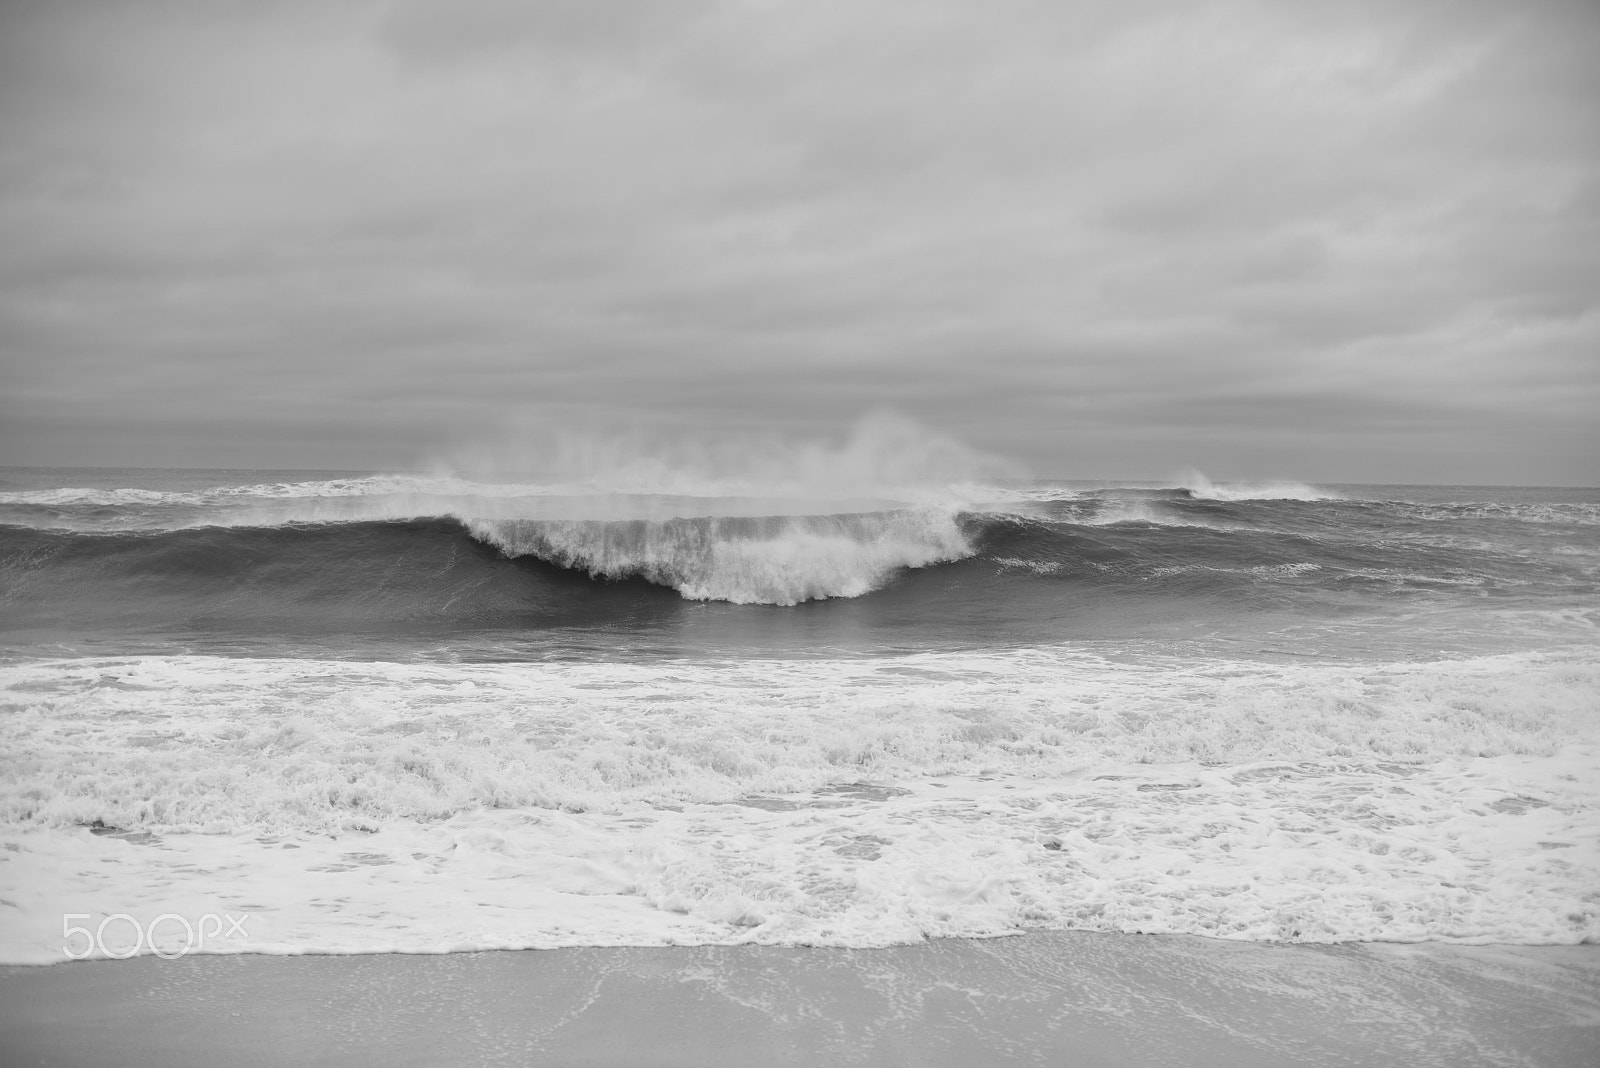 AF Nikkor 50mm f/1.4 sample photo. Ocean photography